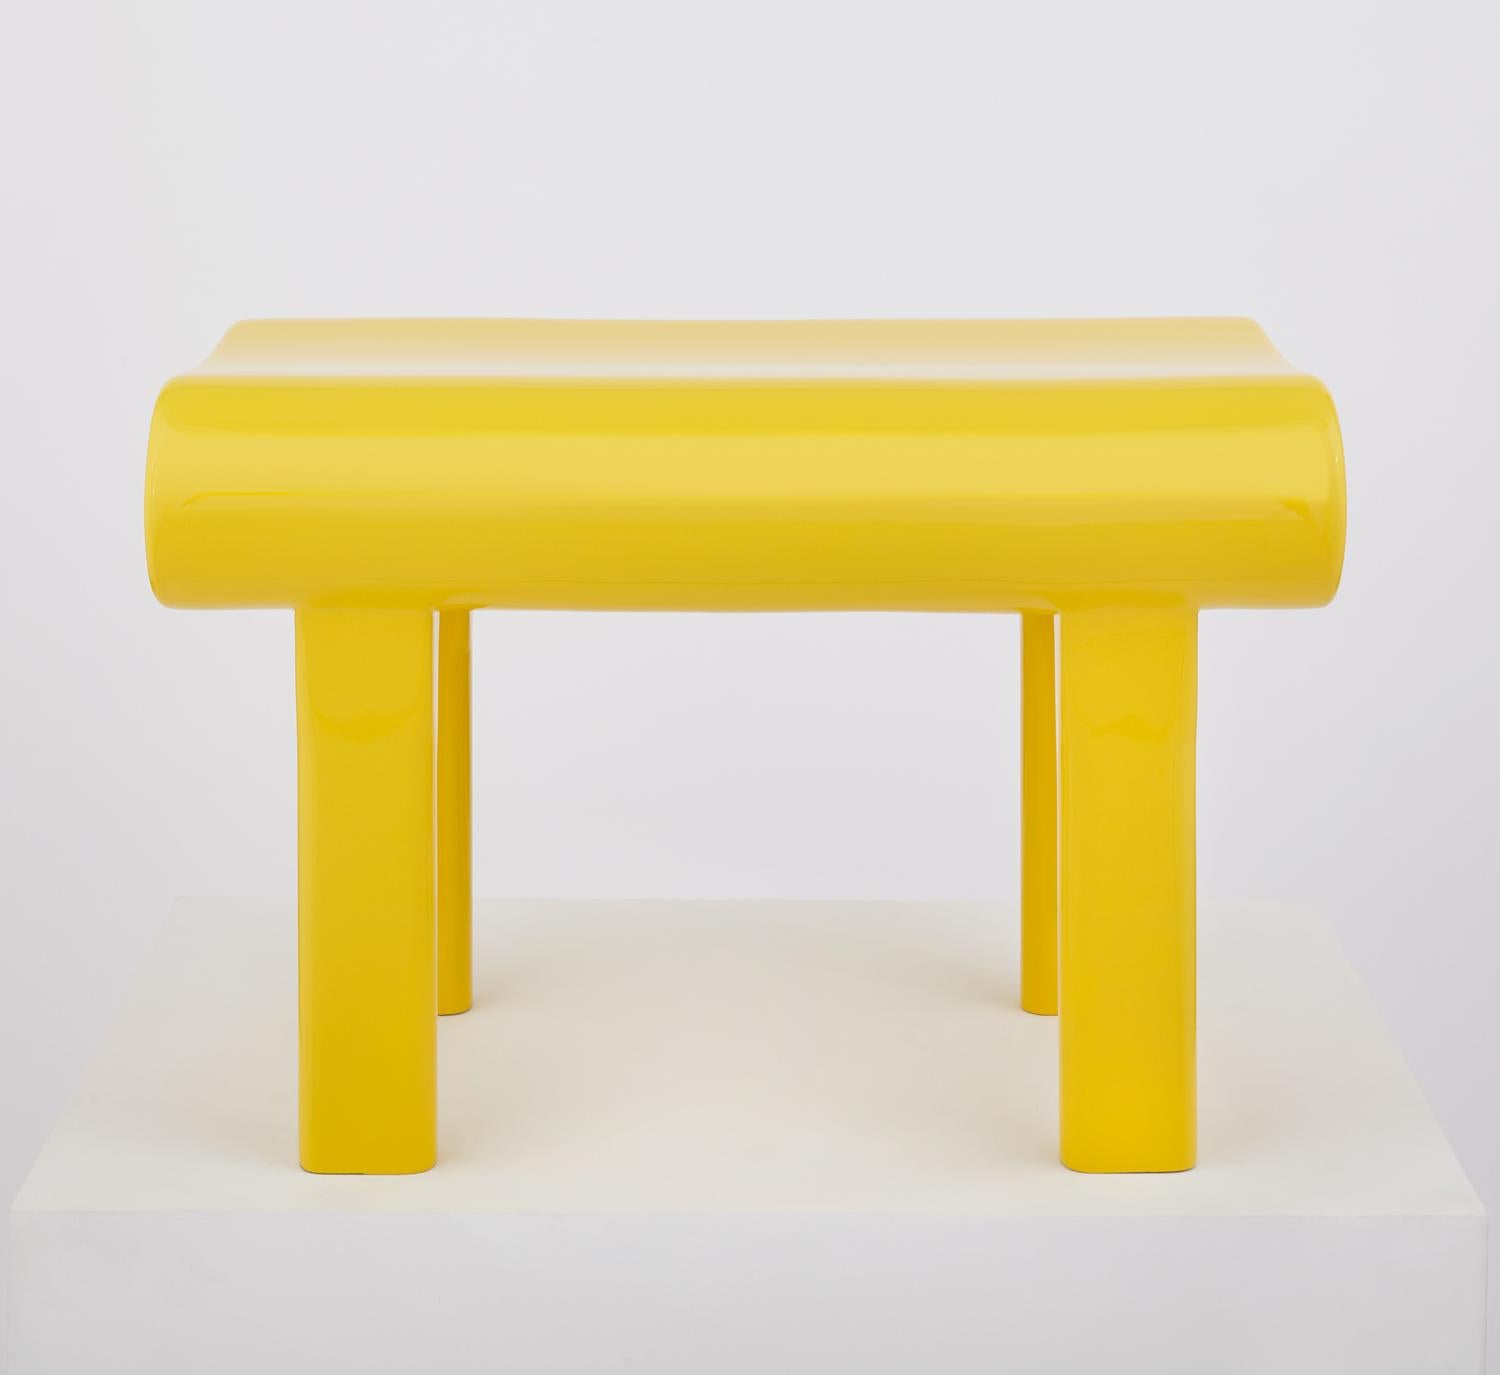 Banc contemporain en bois jaune sculpté avec finition acrylique. Chaque banc est construit en hêtre massif et revêtu d'une finition acrylique brillante. Conçu par Zelonky Studios, une icône minimaliste instantanée, rejoignant le panthéon des